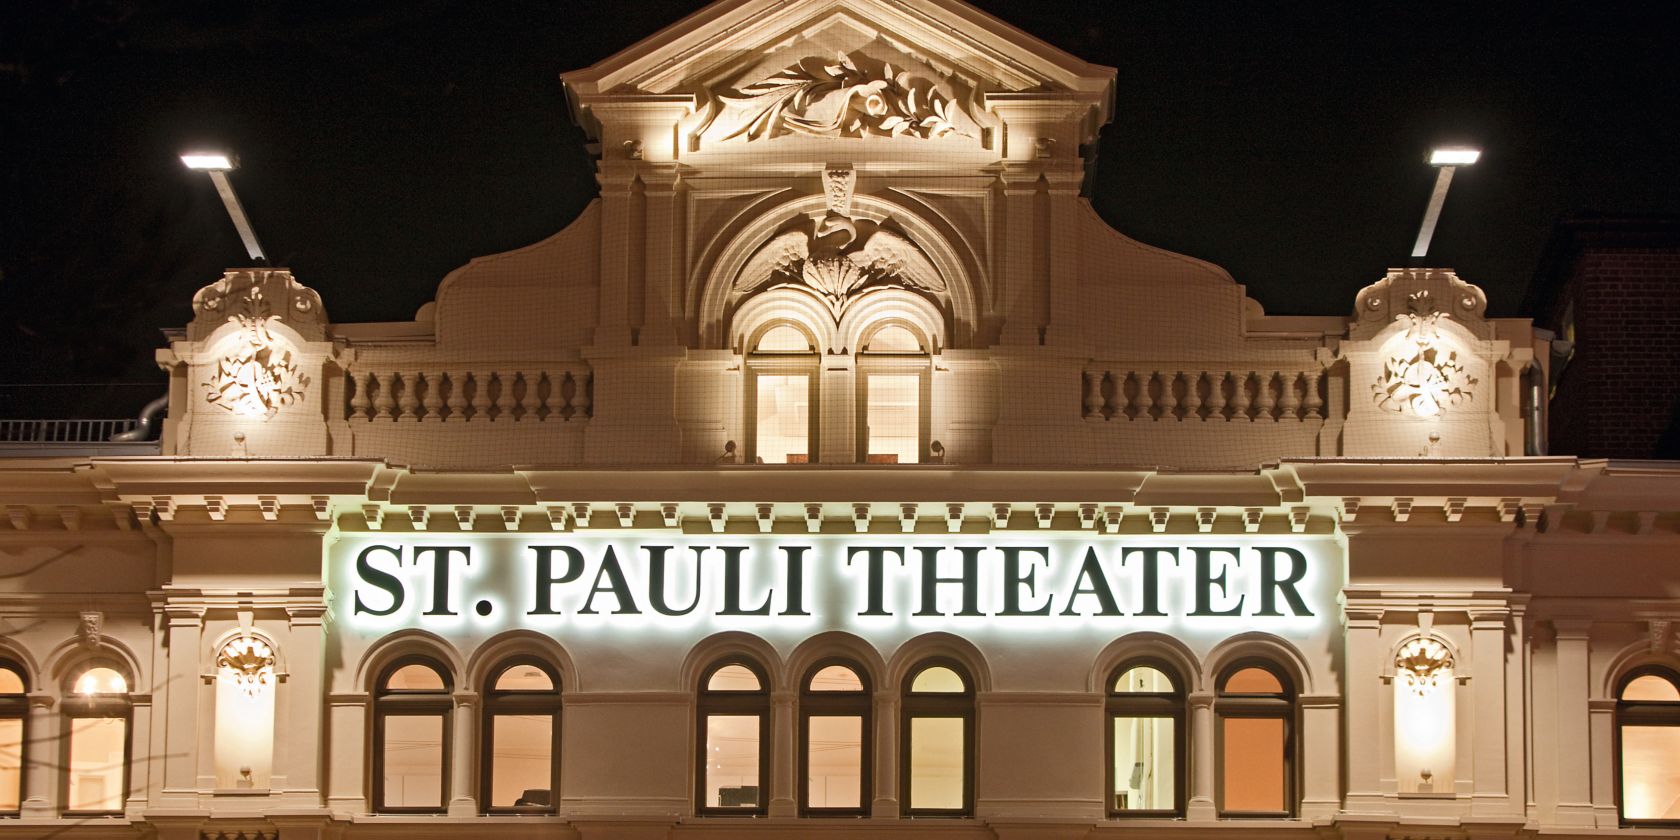 St. Pauli Theater am Abend, © Stefan Malzkorn